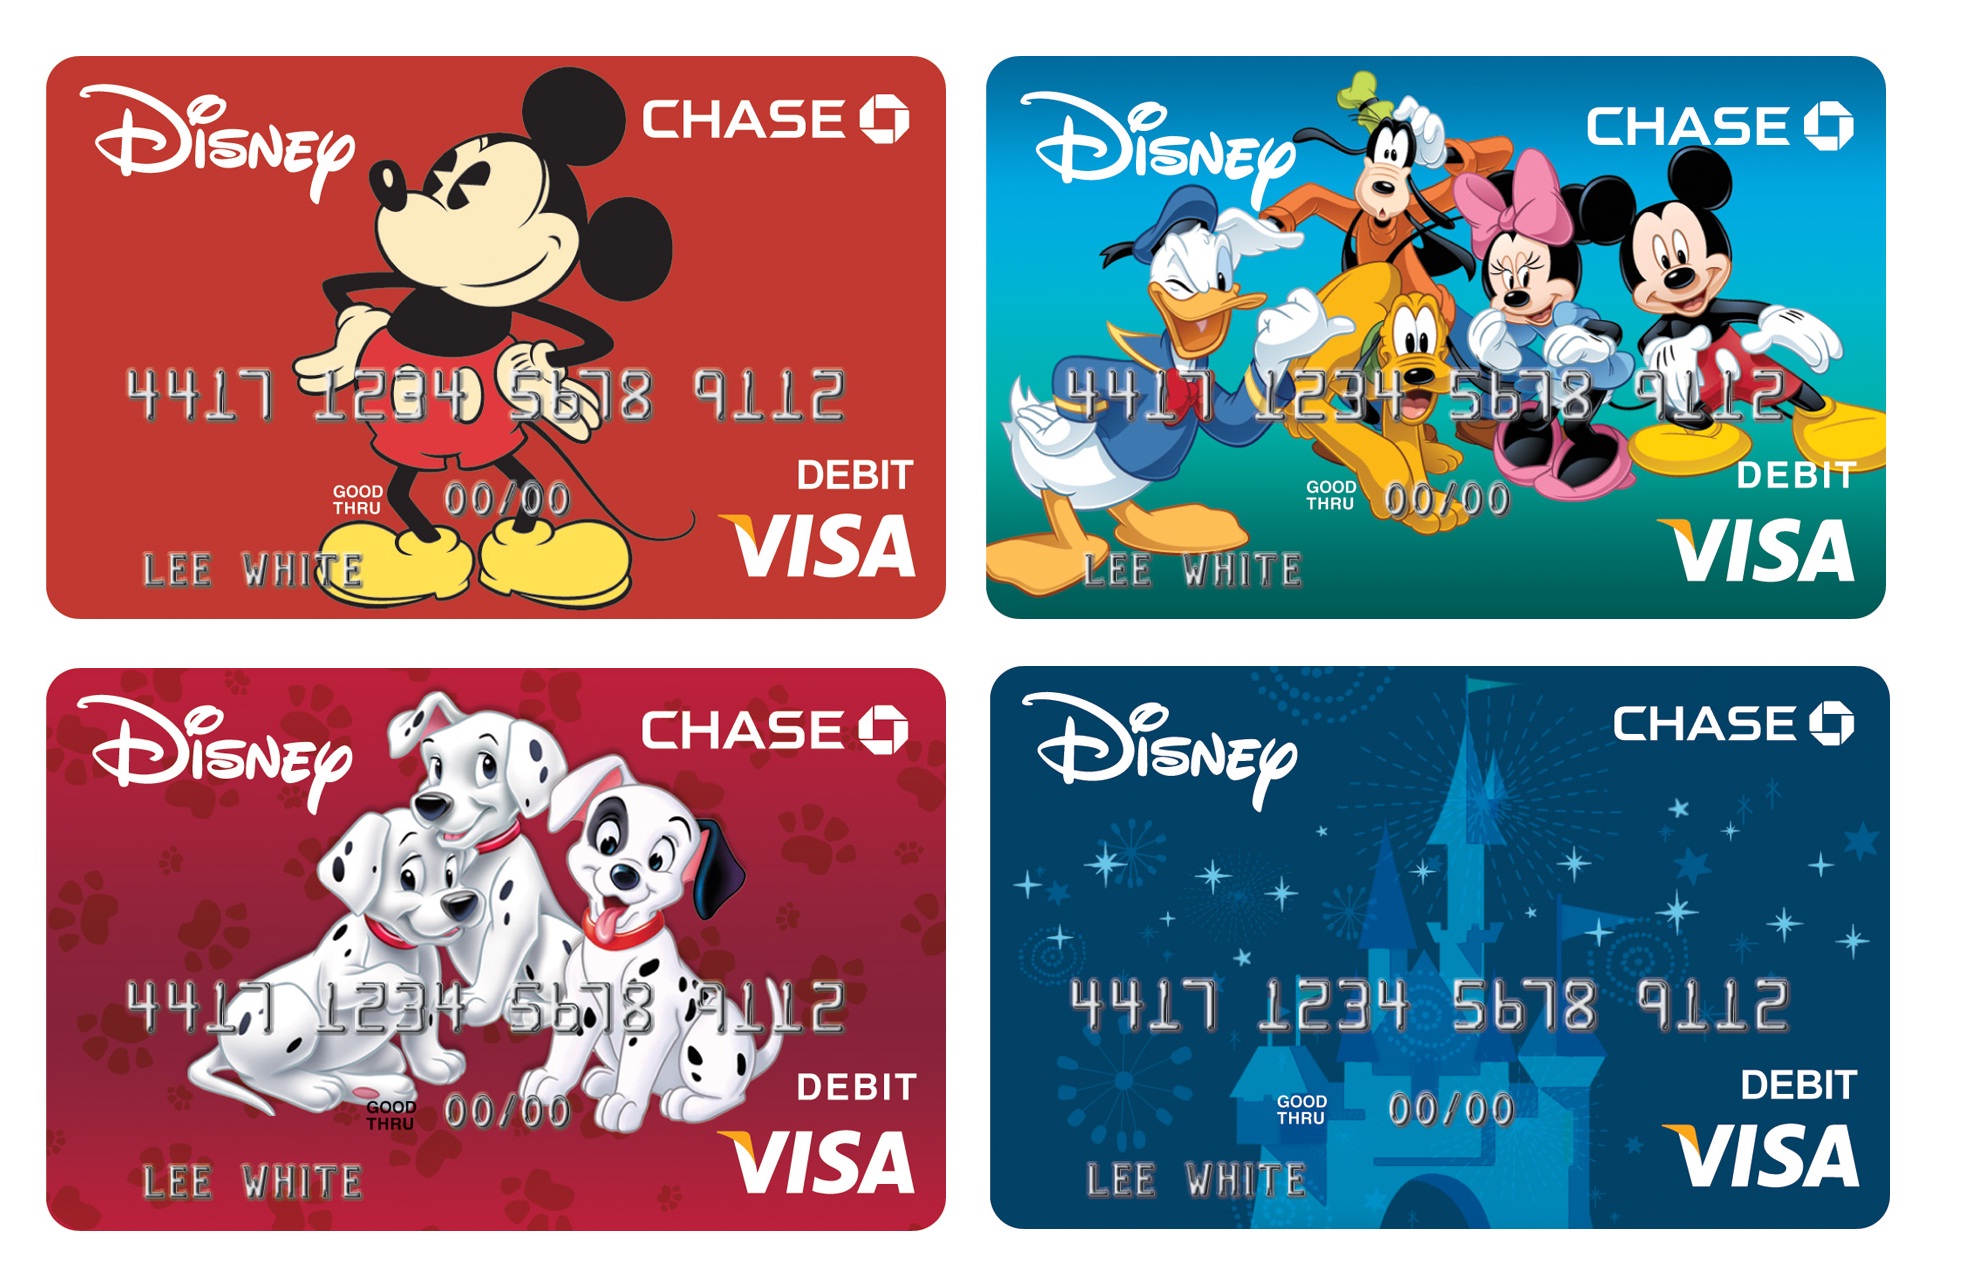 The Original Disney Visa Cards